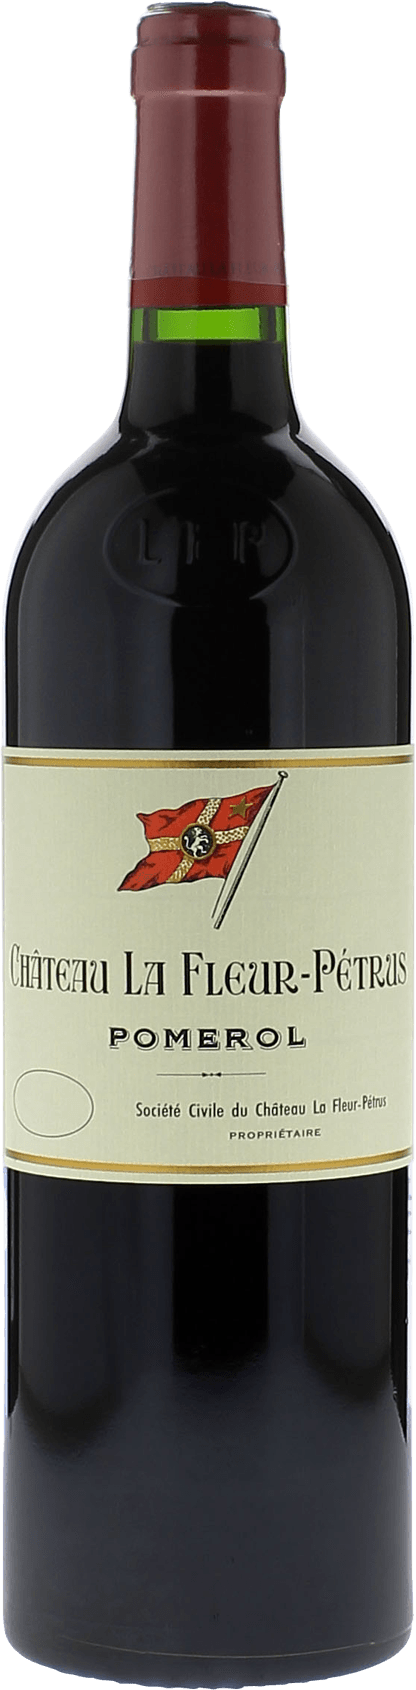 La fleur petrus 1980  Pomerol, Bordeaux rouge